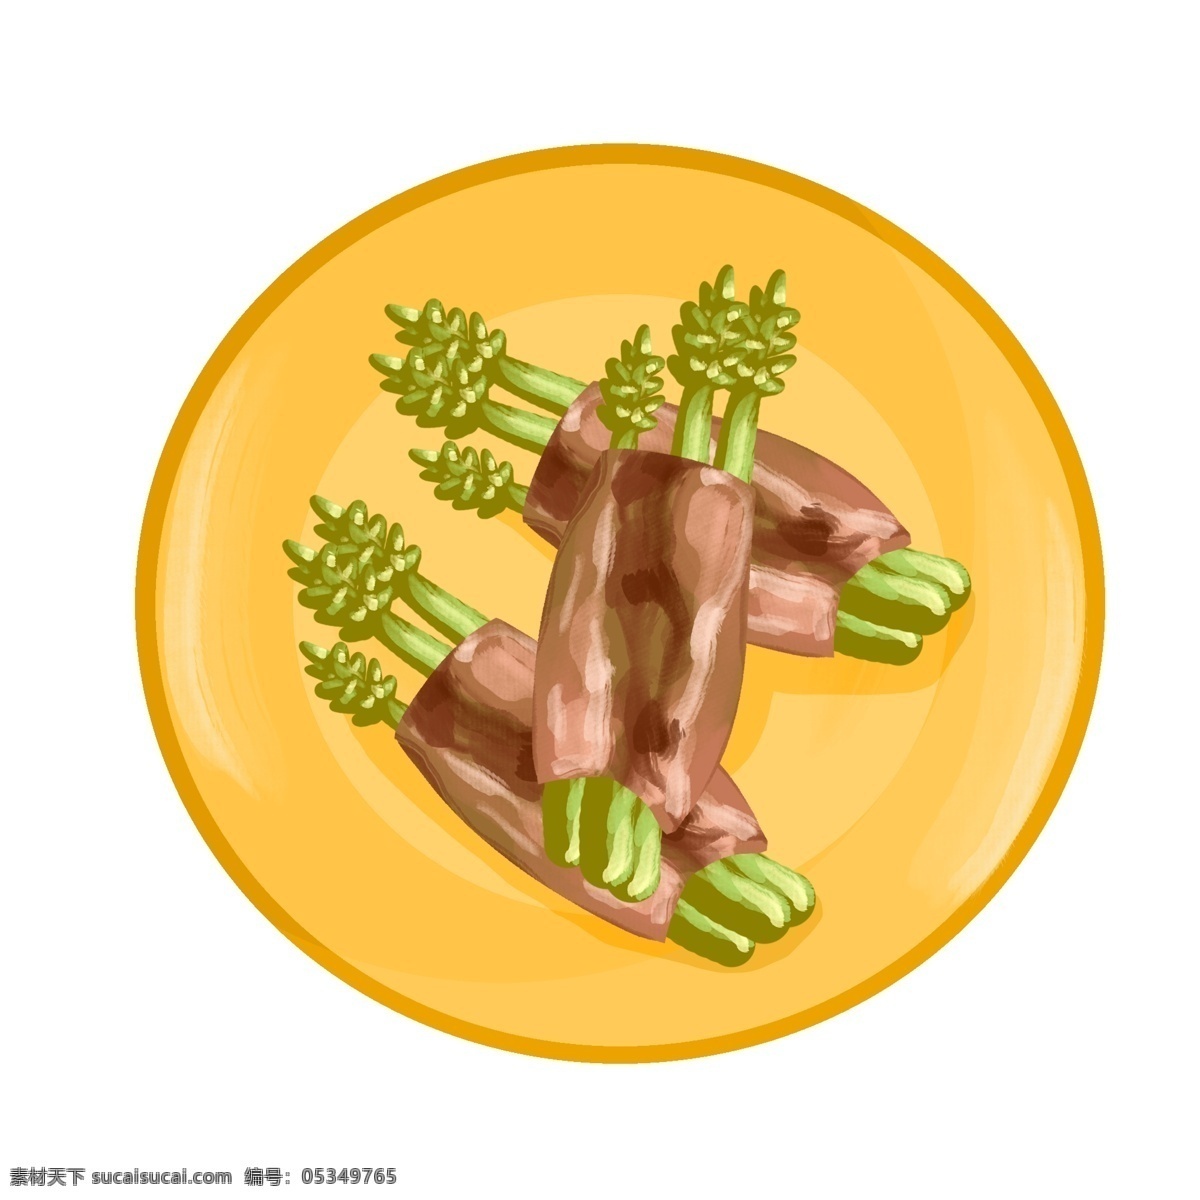 精美 烧烤 肉 包 菜 肉包菜 烧烤食物 卡通食物插画 食物 美味的烧烤 黄色的盘子 美味肉包菜